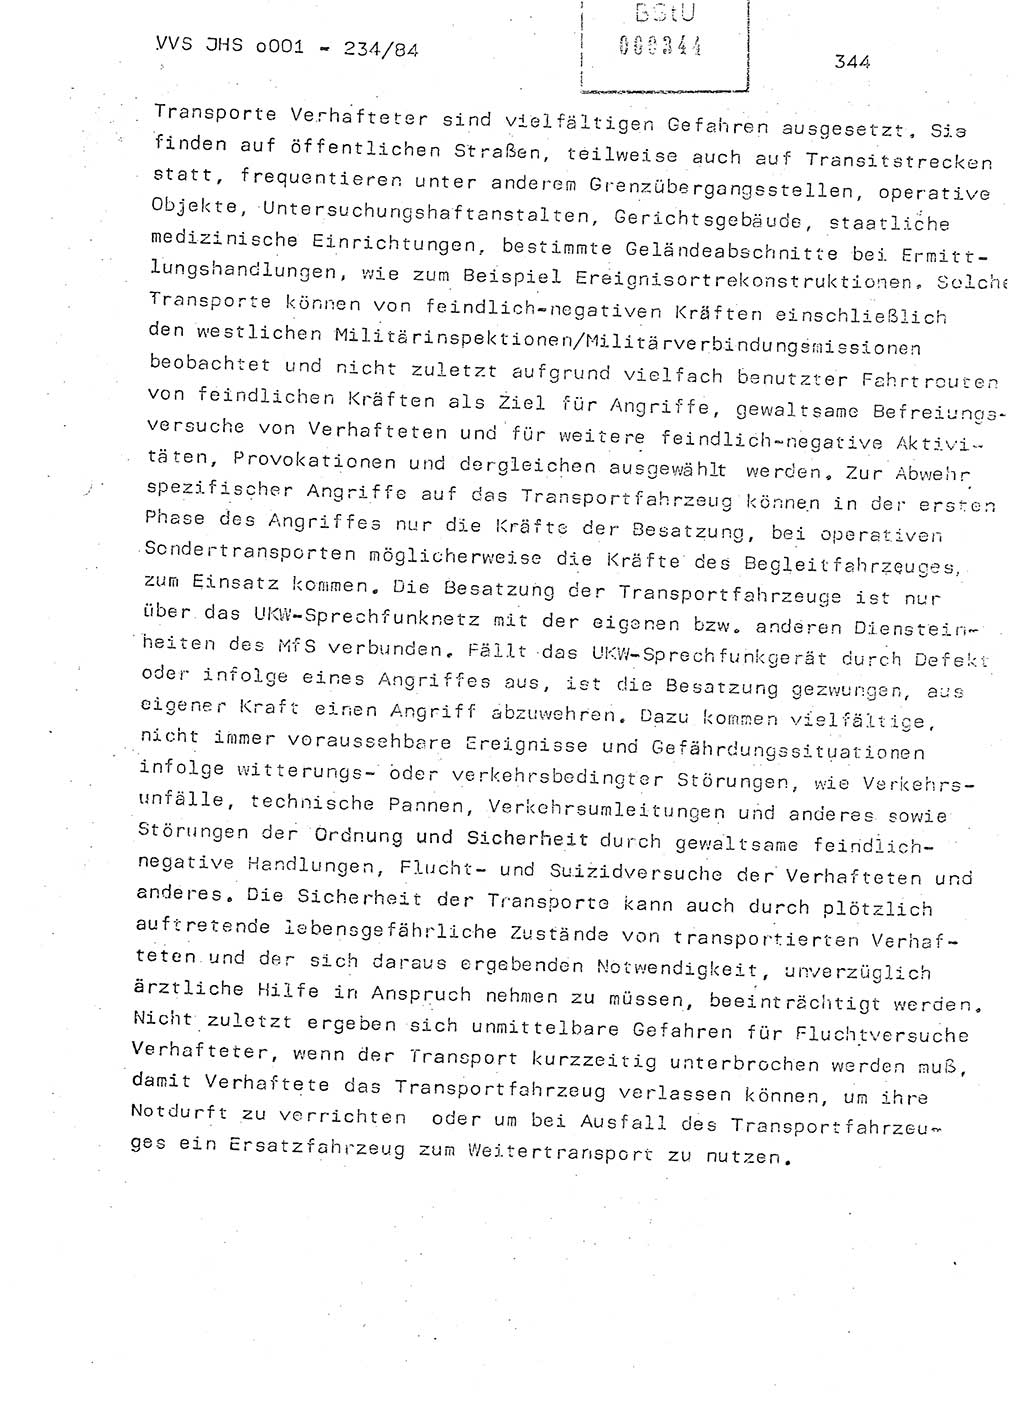 Dissertation Oberst Siegfried Rataizick (Abt. ⅩⅣ), Oberstleutnant Volkmar Heinz (Abt. ⅩⅣ), Oberstleutnant Werner Stein (HA Ⅸ), Hauptmann Heinz Conrad (JHS), Ministerium für Staatssicherheit (MfS) [Deutsche Demokratische Republik (DDR)], Juristische Hochschule (JHS), Vertrauliche Verschlußsache (VVS) o001-234/84, Potsdam 1984, Seite 344 (Diss. MfS DDR JHS VVS o001-234/84 1984, S. 344)